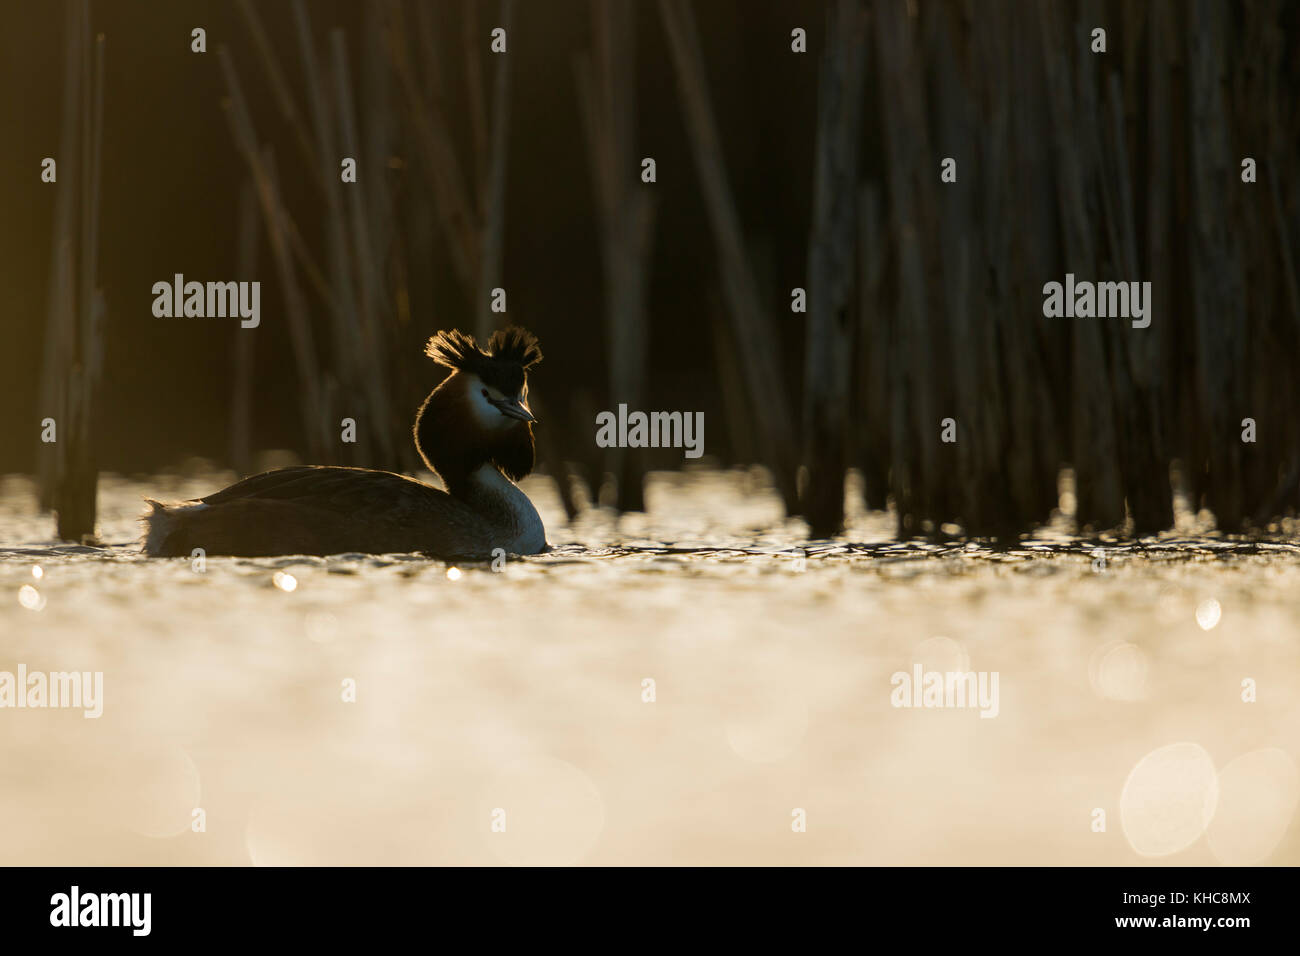 Grande grBE crestato ( Podiceps cristatato ) nuotare di fronte ai canne, la prima luce del mattino, situazione di retroilluminazione, bei riflessi, bordo di luce, Europa. Foto Stock